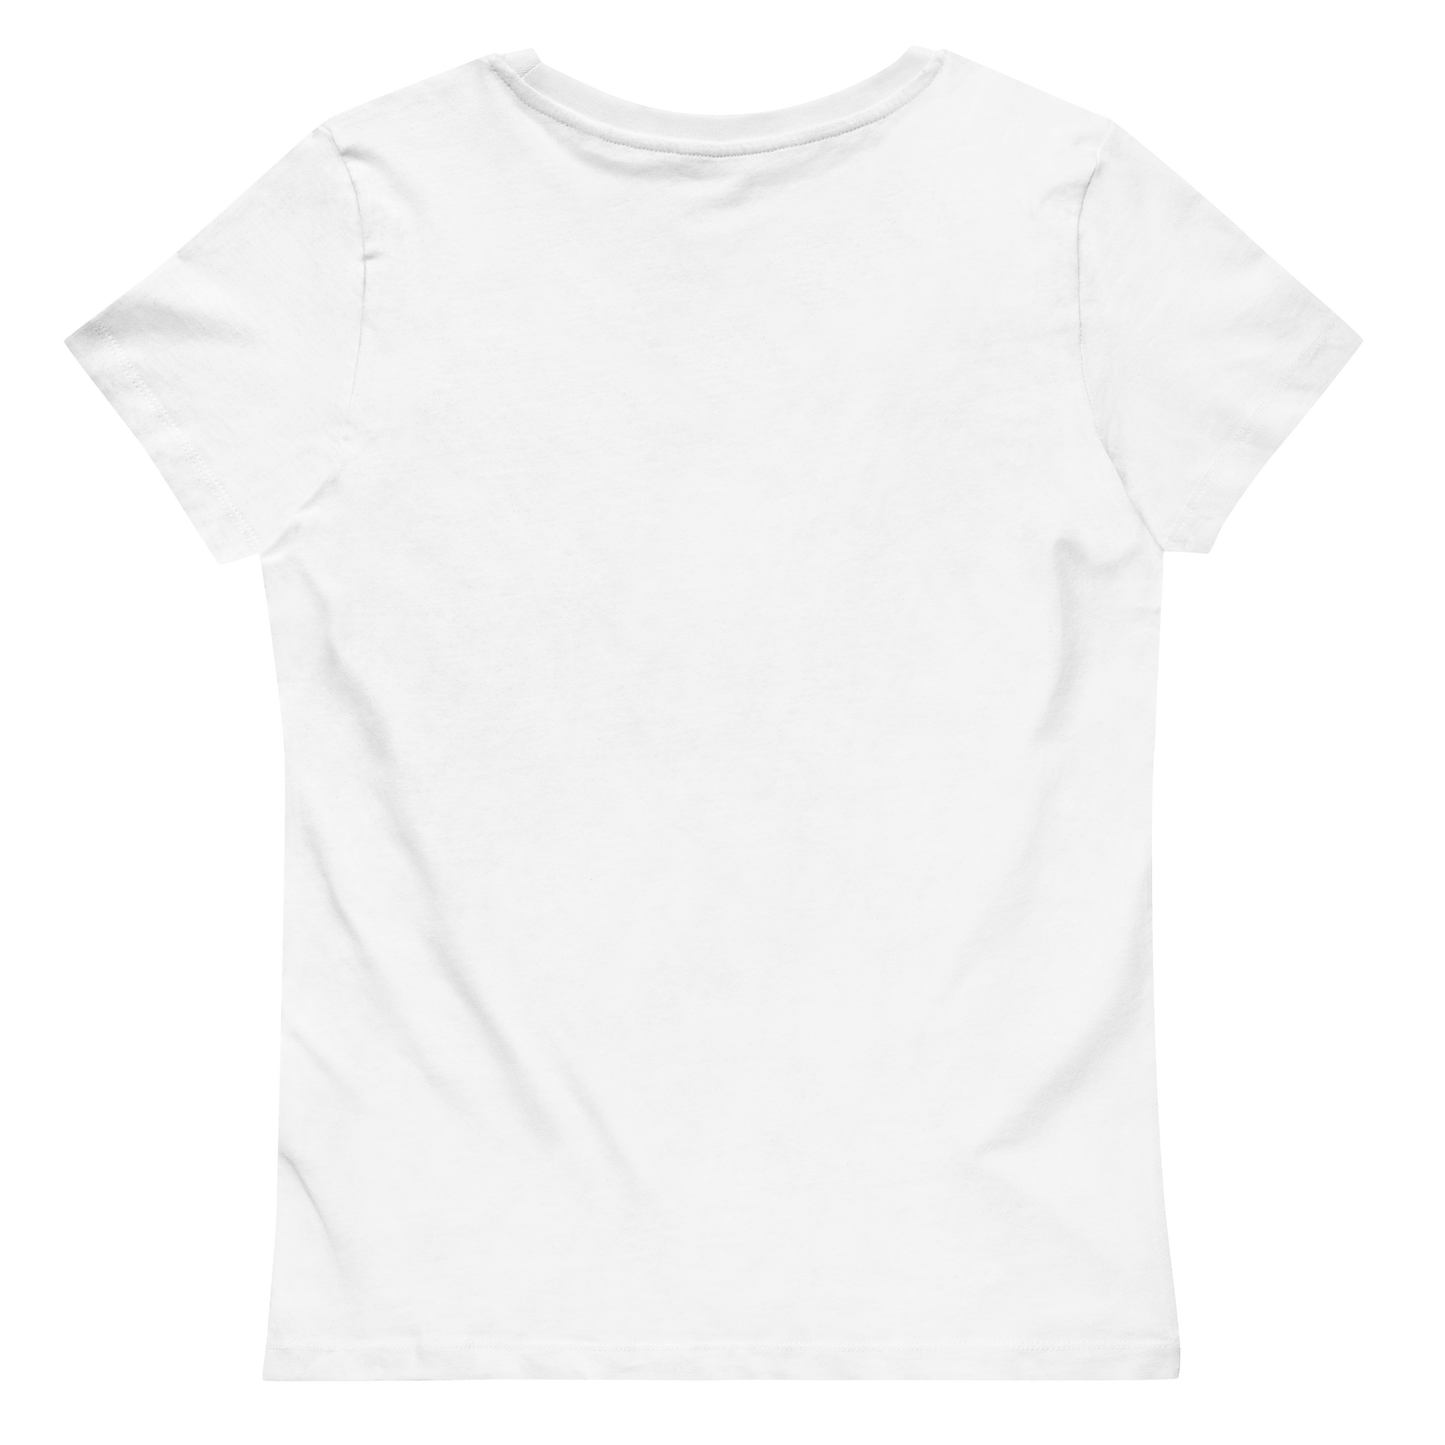 Women's T-Shirt - Discreet V1.0 - White - Premium